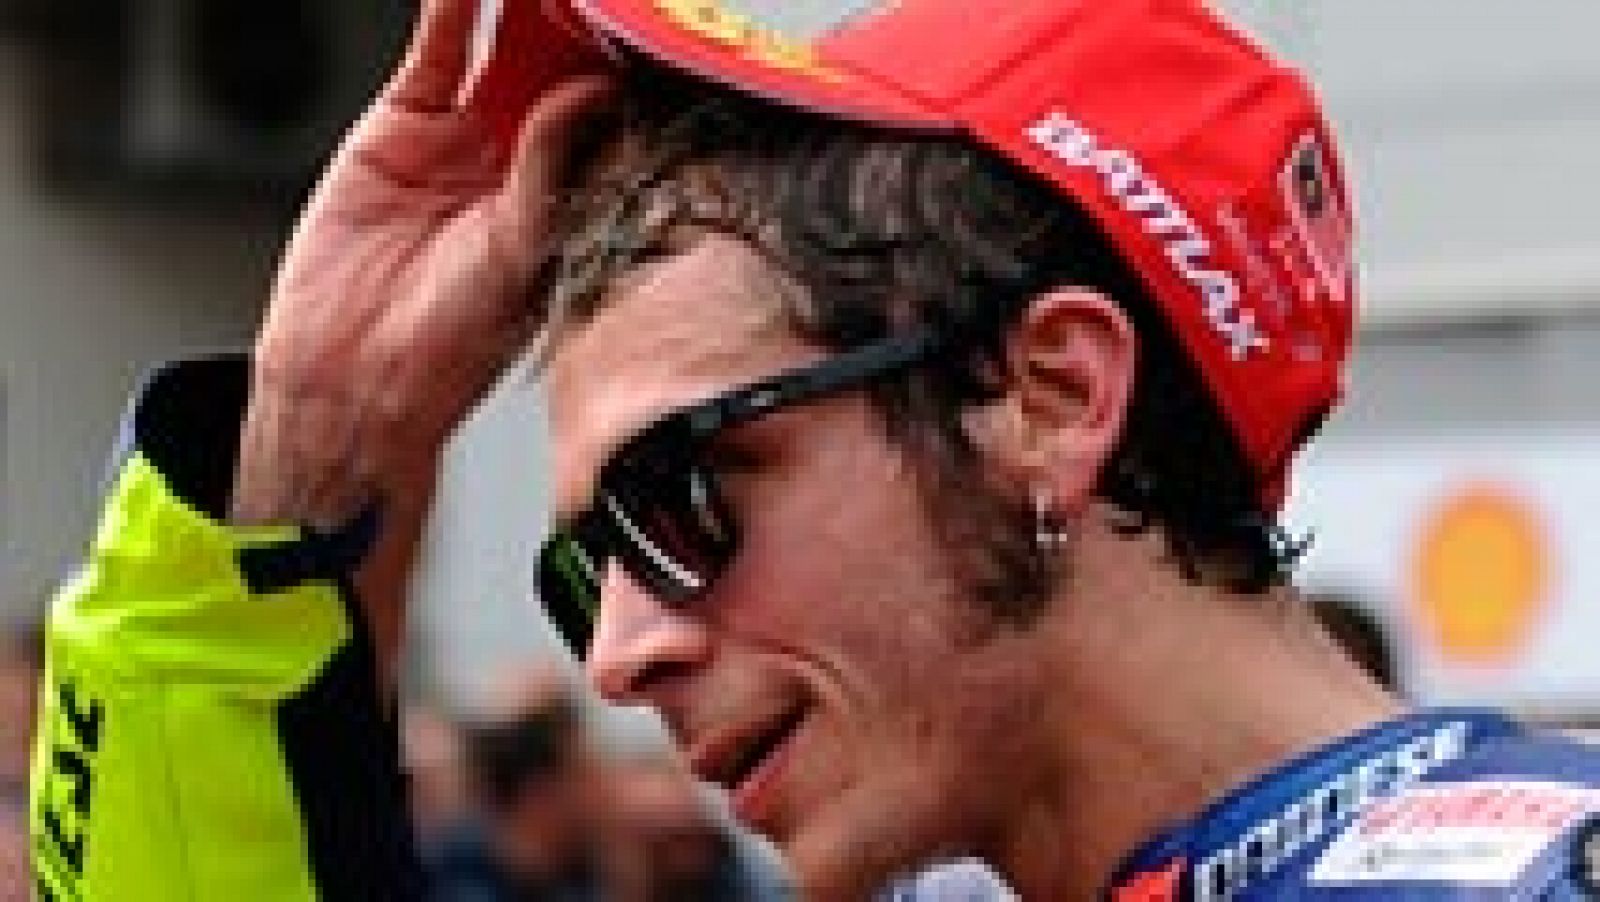 El piloto italiano Valentino Rossi, actual líder del Mundial de MotoGP, cuyo título se decidirá este domingo en el Gran Premio de la Comunidad Valenciana, en el circuito de Cheste, ha indicado que espera poder jugárselo en "igualdad de condiciones" que el español Jorge Lorenzo.